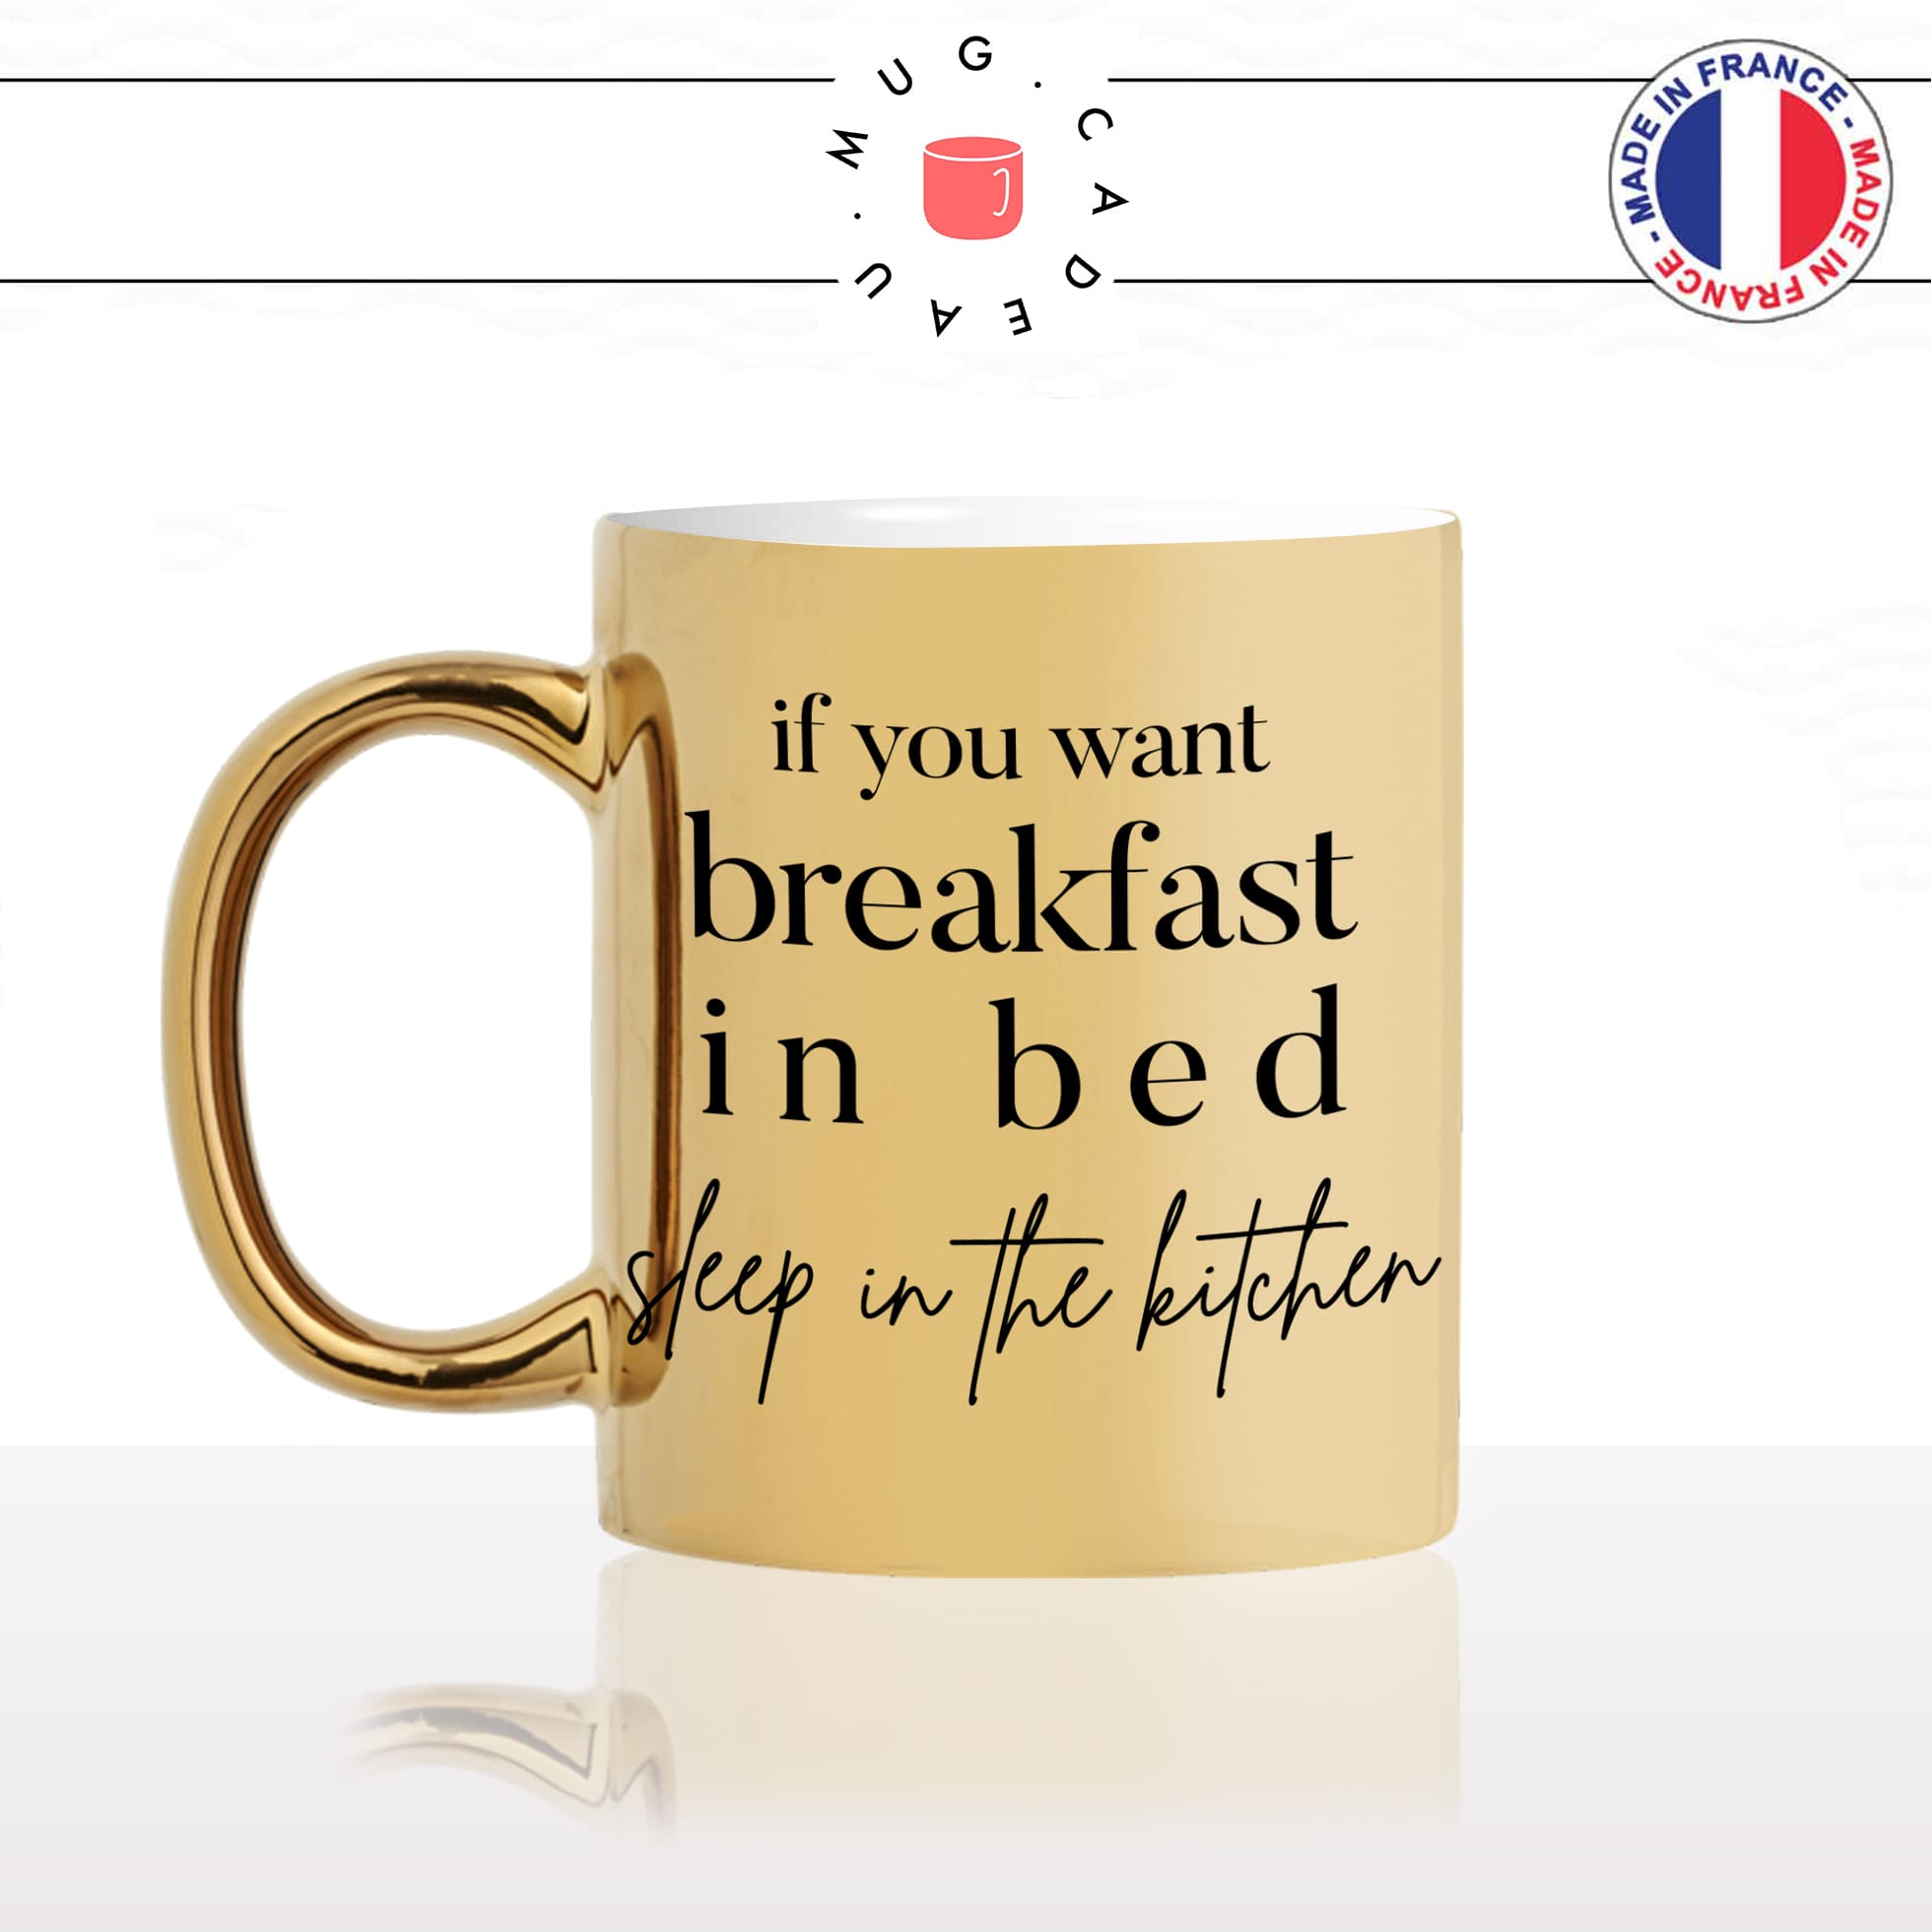 mug-tasse-or-doré-brillant-cadeau-breakfast-in-bed-petit-dej-au-lit-dors-dans-la-cuisine-cuisiniere-humour-café-thé-personnalisé-personnalisable